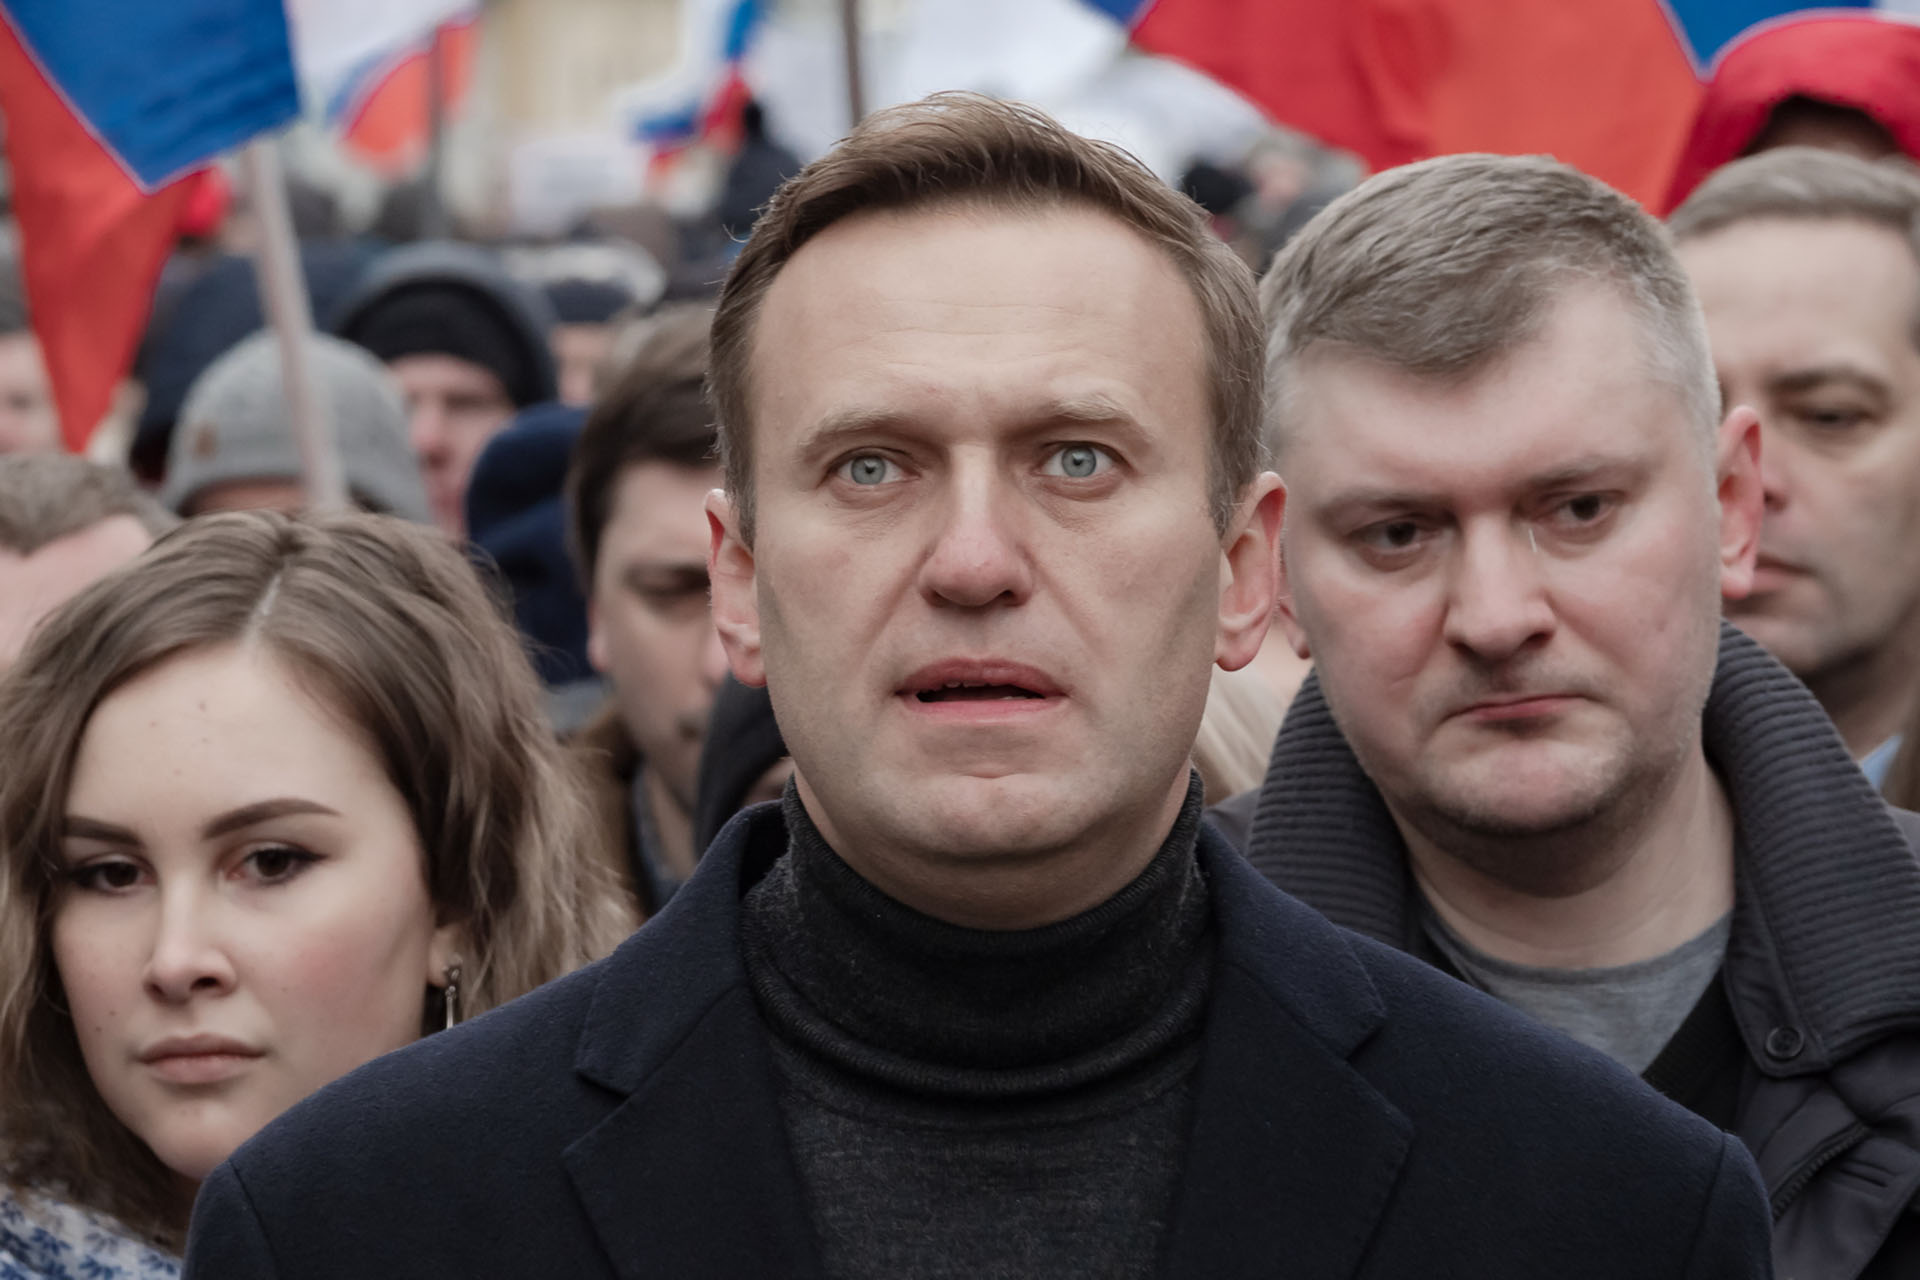 Bild: Michał Siergiejevicz, Alexey Navalny in 2020, CC BY 2.0, via Wikimedia Commons (Bildgröße geändert)